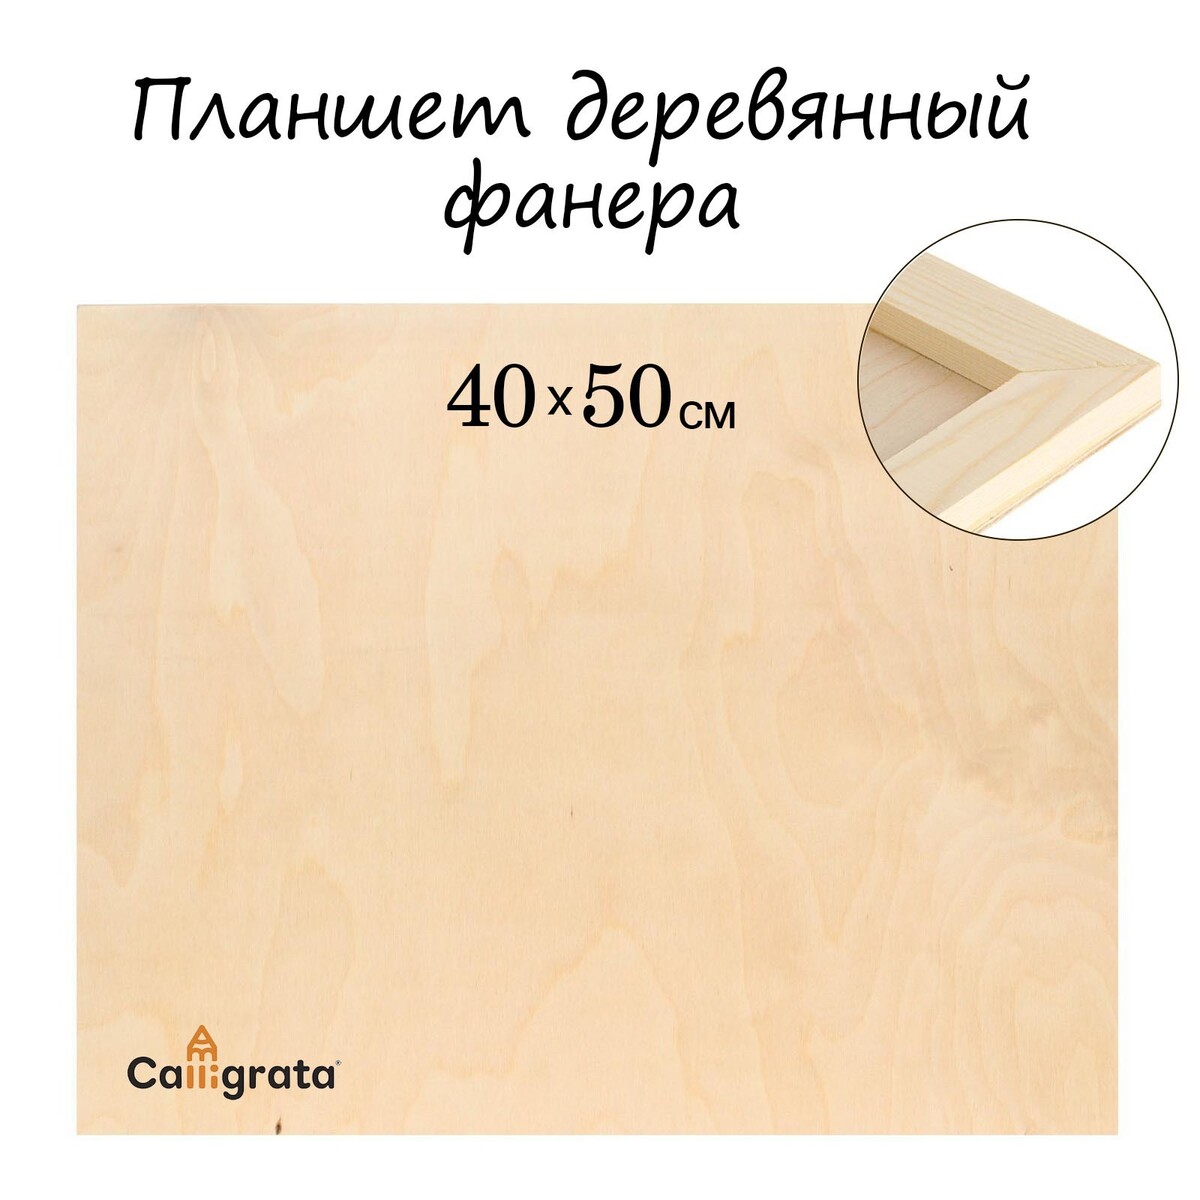 Планшет деревянный 40 х 50 х 2 см, фанера (для рисования эпоксидной смолой) планшет деревянный 40 х 50 х 2 см двп